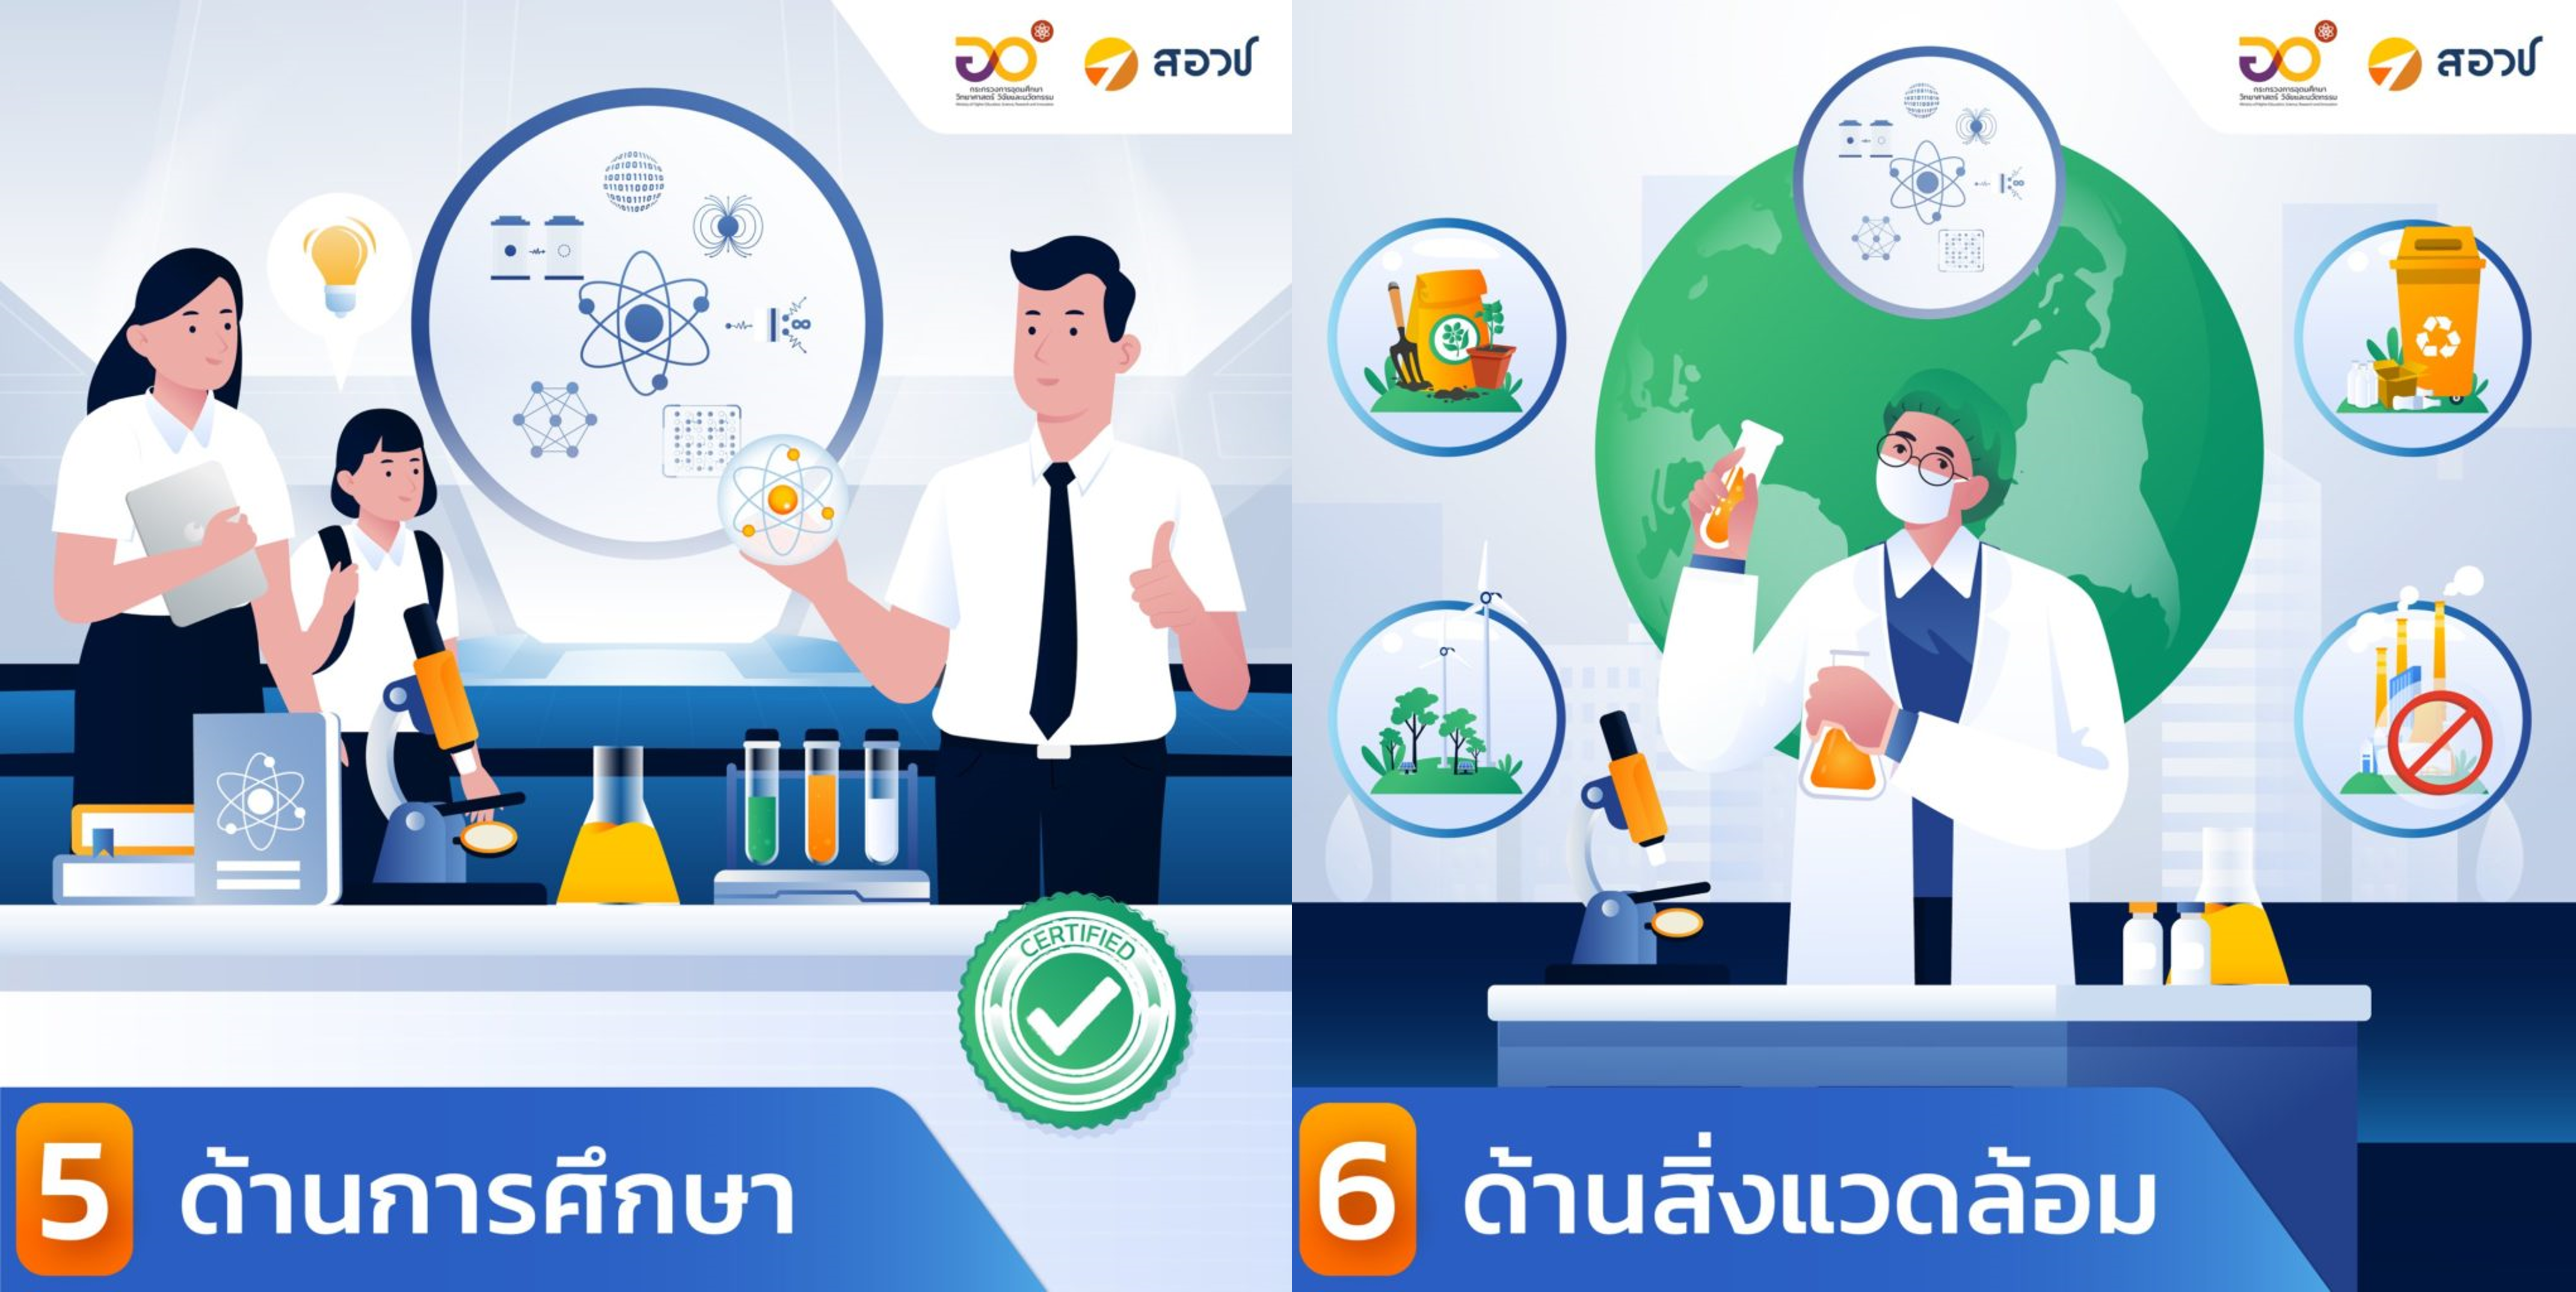 เทคโนโลยีควอนตัมต่อประเทศไทย ทั้ง 7 ด้าน